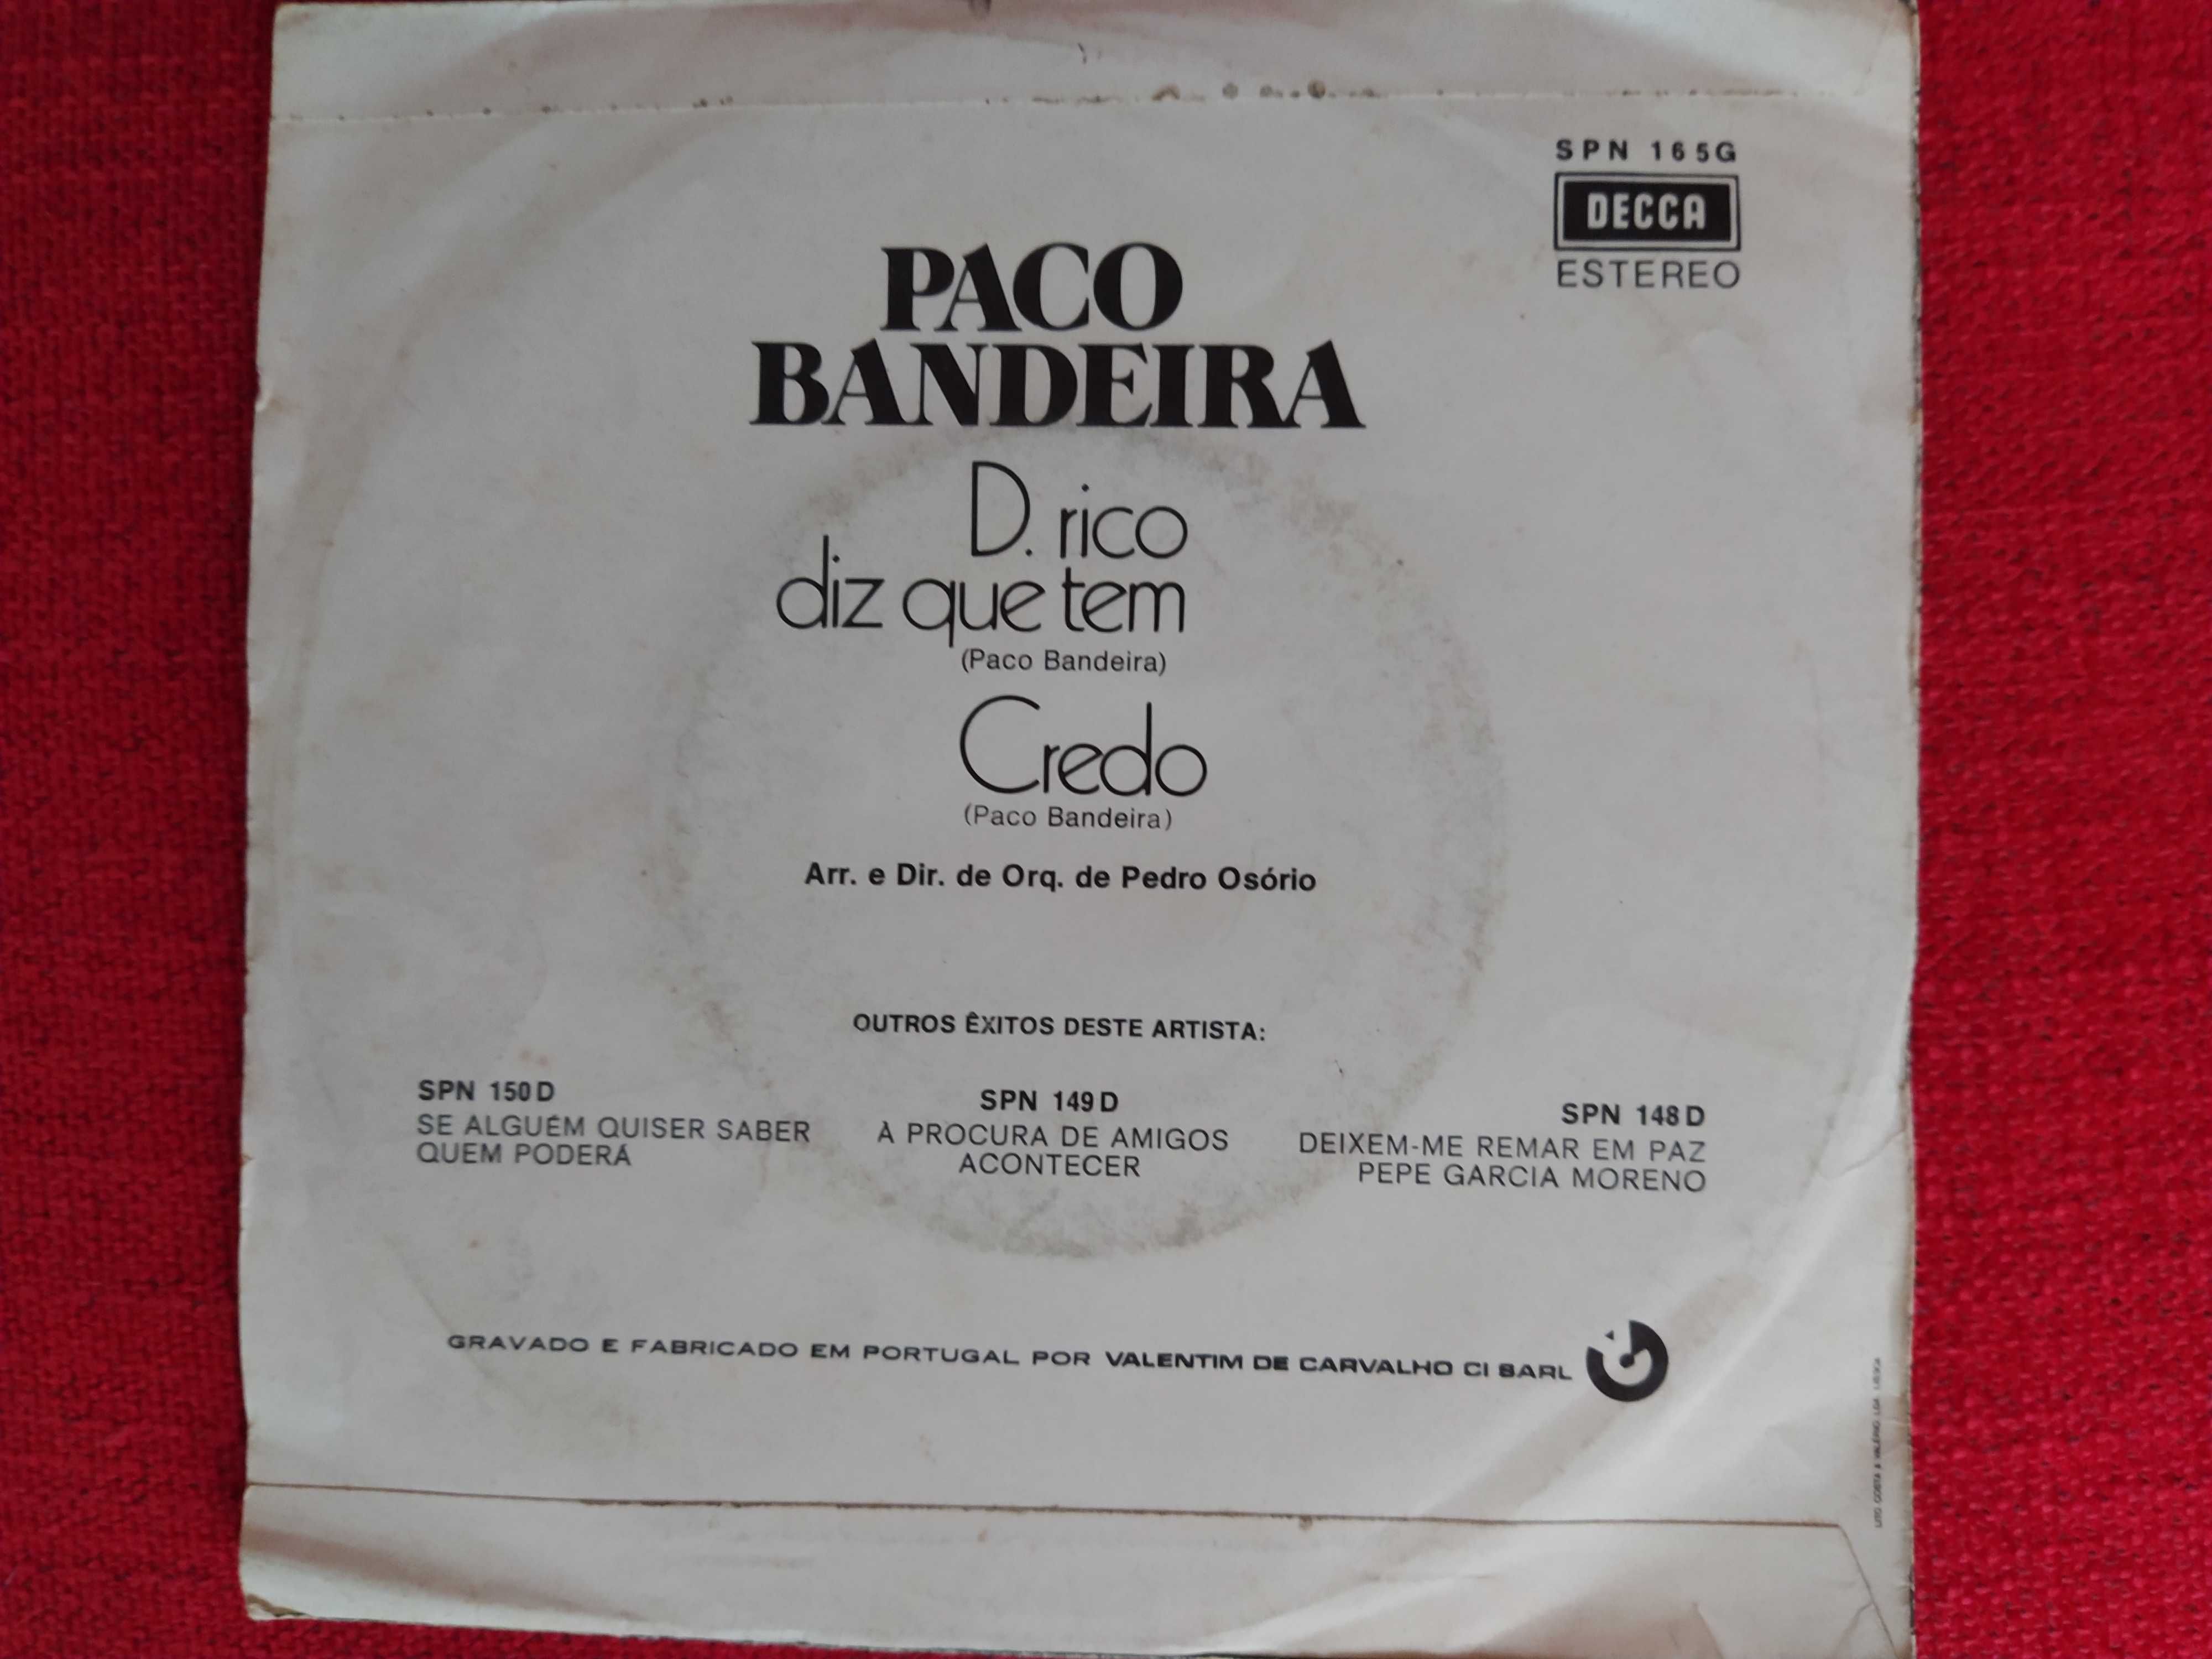 Single D. Rico Diz que tem + Credo - Paco Bandeira